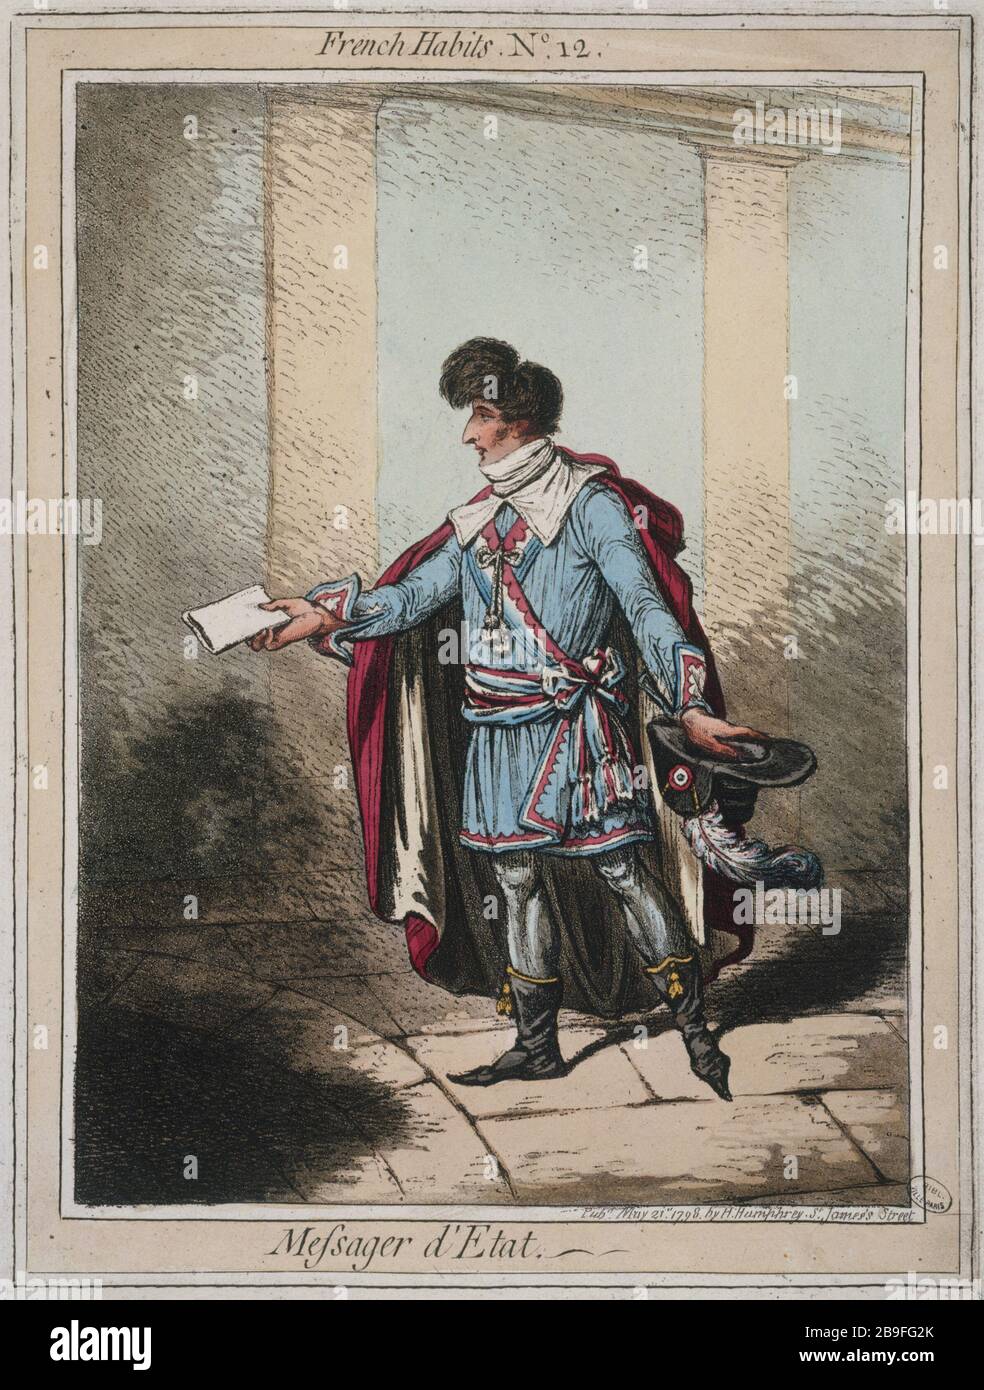 FRANZÖSISCHE KLEIDUNG NUMMER 12: STAATSBOTE JAMES GILLRAY (1757-1815). "Französische Gewohnheiten, tauméro 12: Messager d'Etat". Paris, musée Carnavalet. Stockfoto